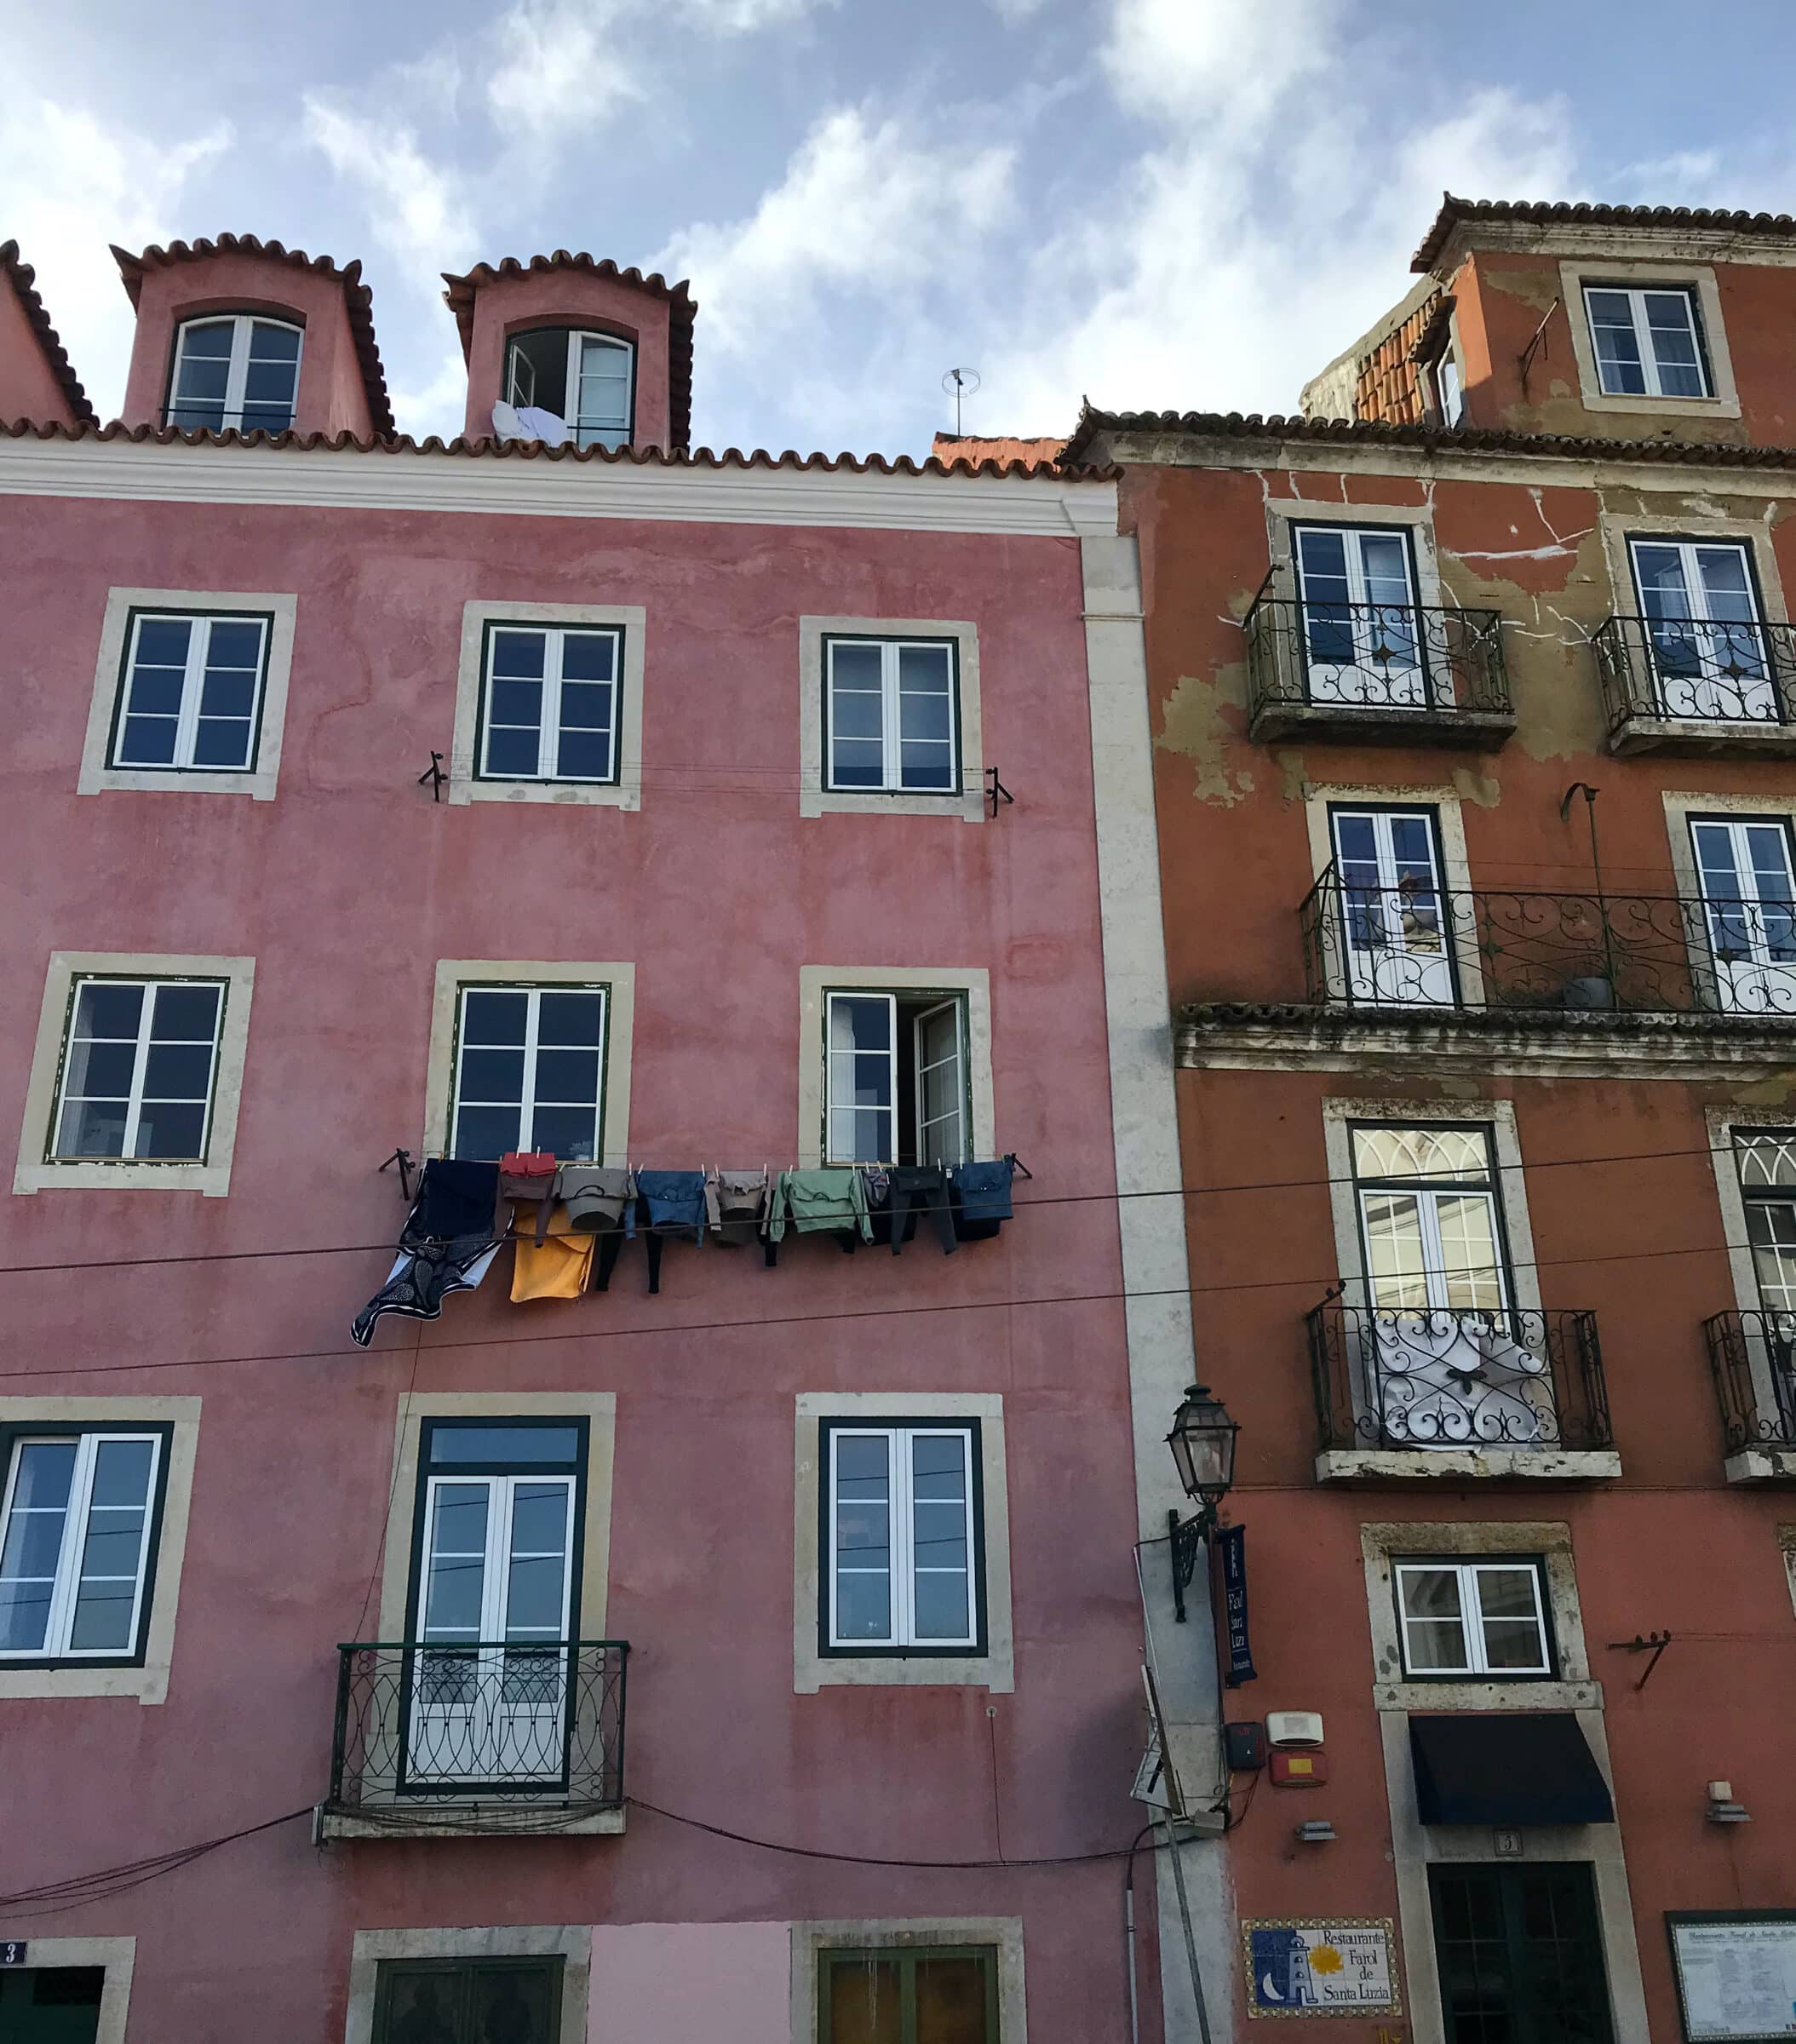 Kolorowe domy w tętniącej życiem Lizbonie